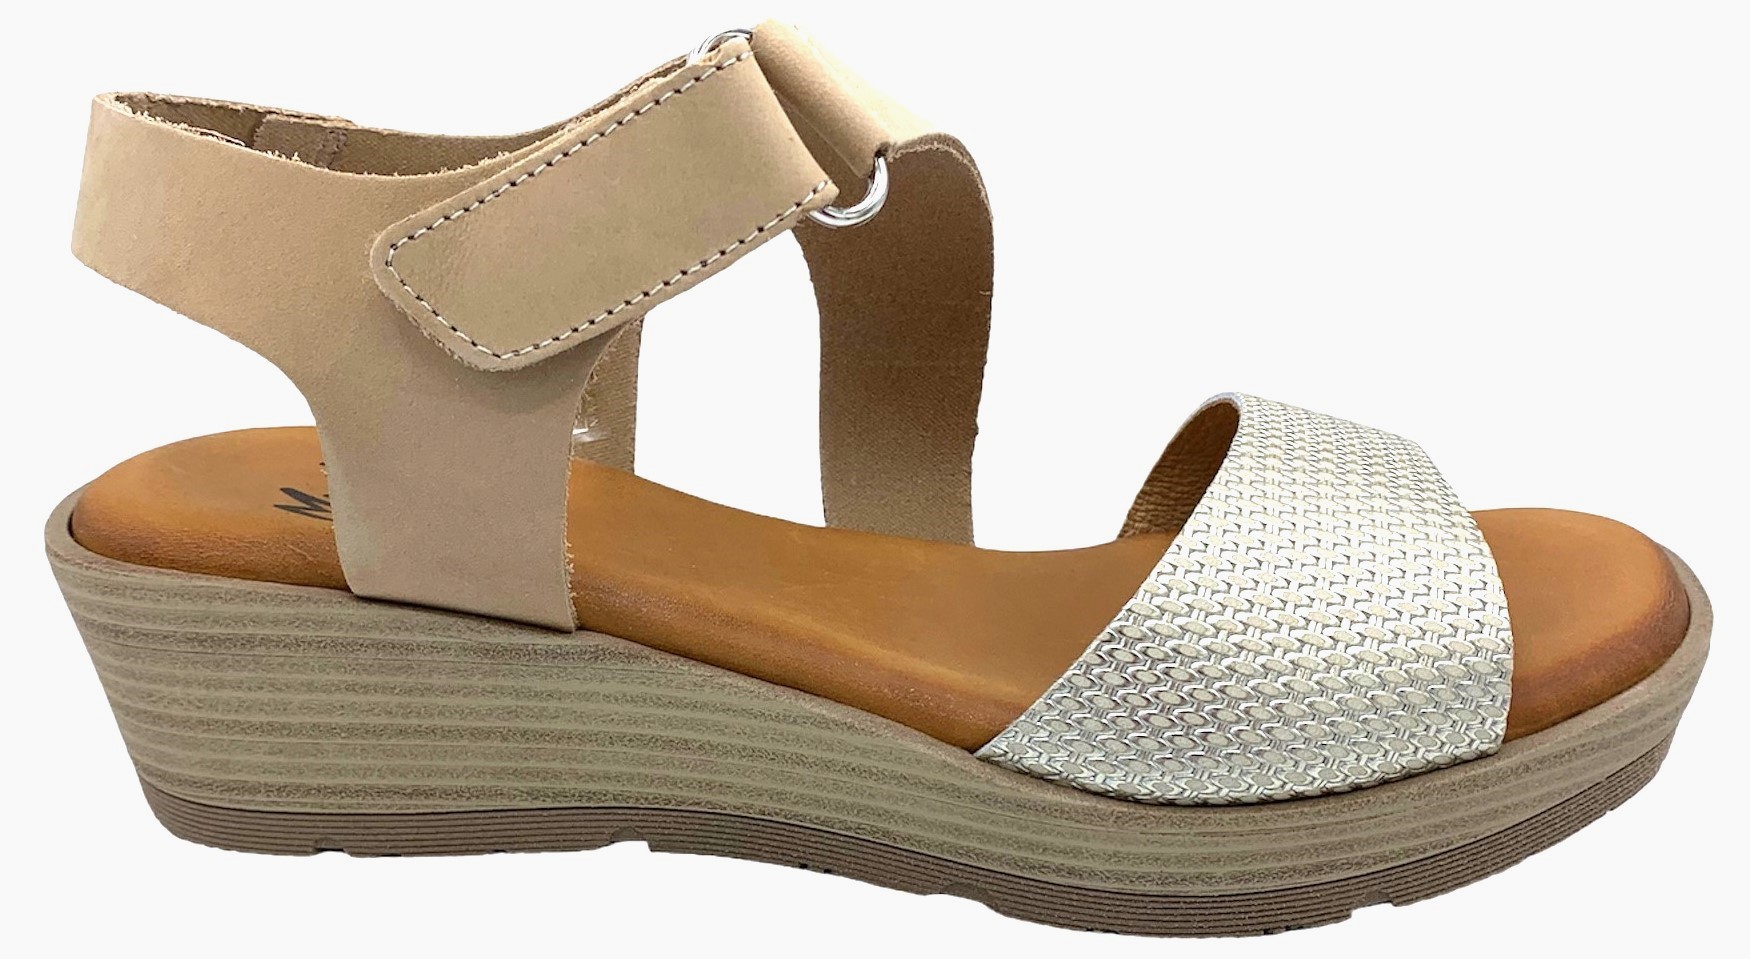 Dámské kožené sandále na klínku MISSTIC 100140 béžové Velikost: 39 (EU)